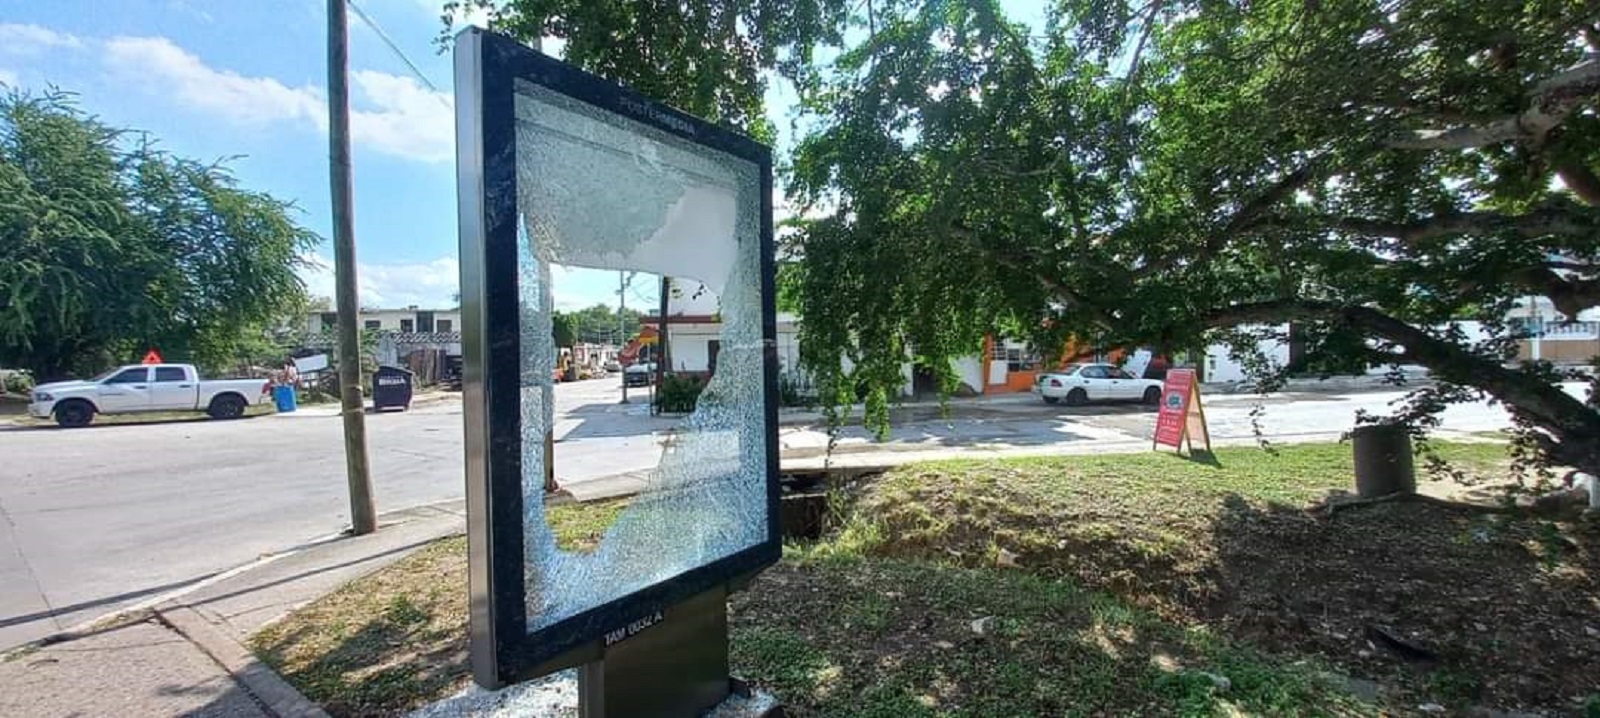 Siguen actos vandálicos en Tampico